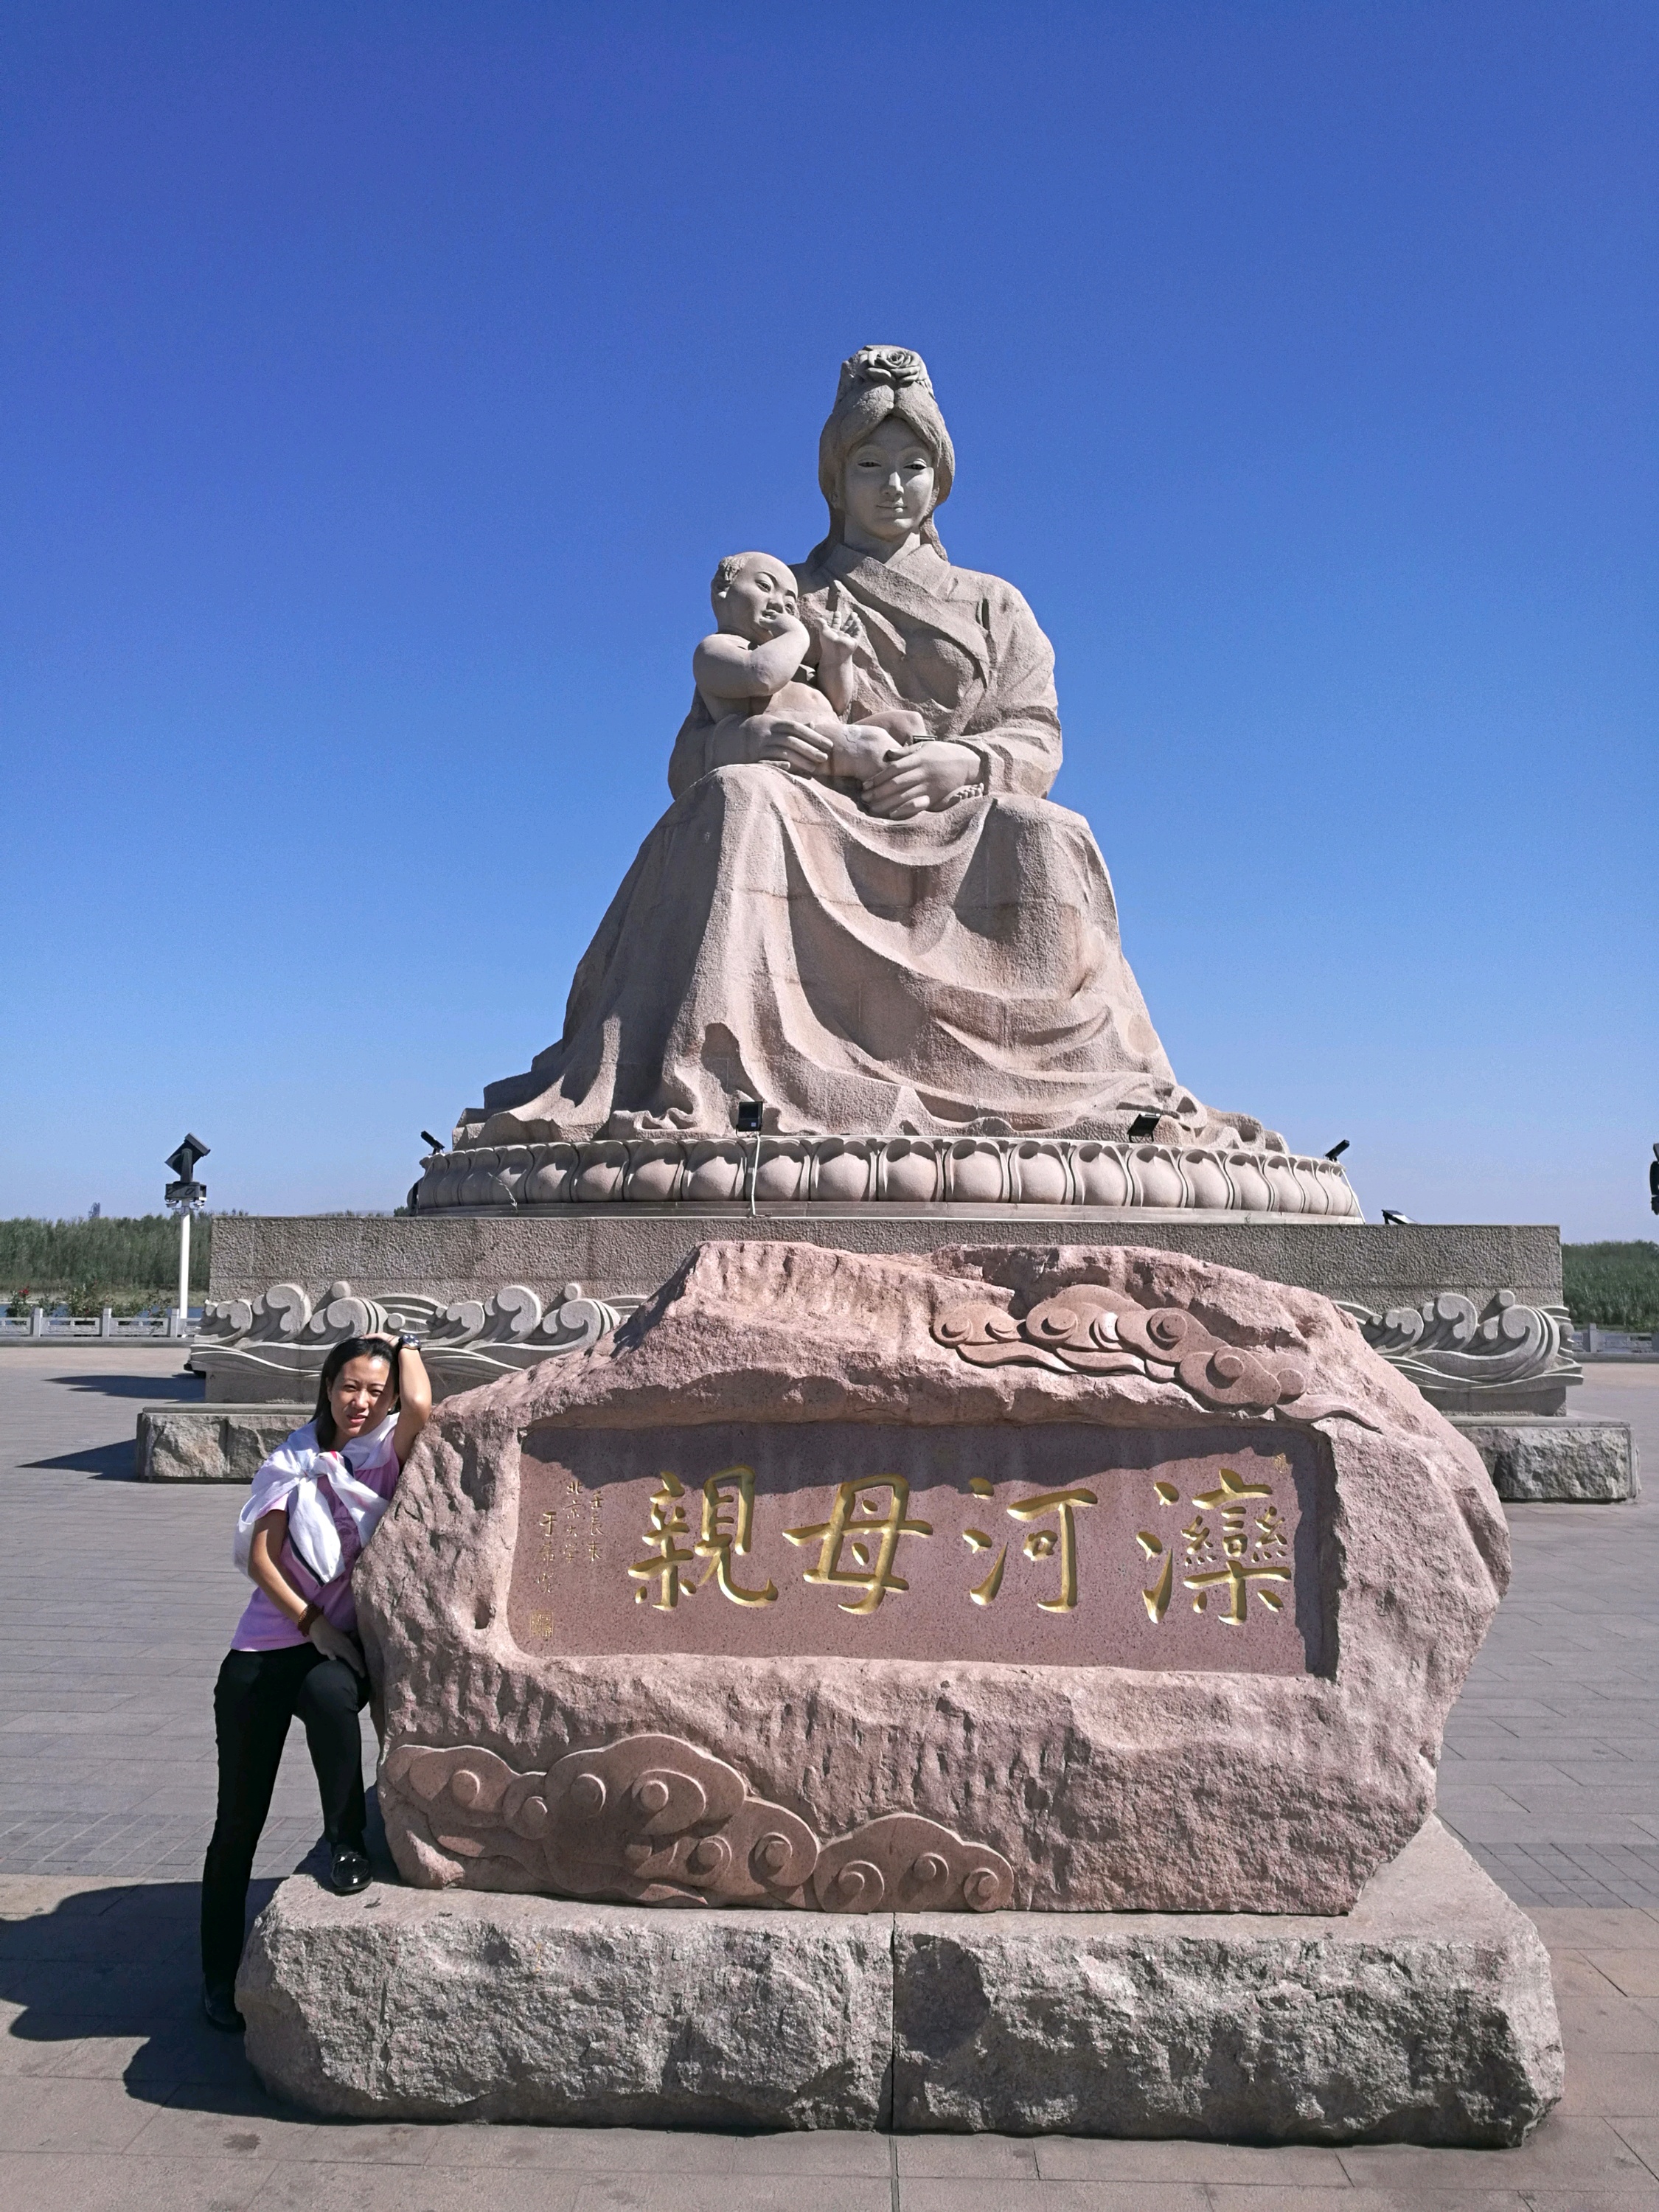 滦州市旅游图片,滦州市自助游图片,滦州市旅游景点